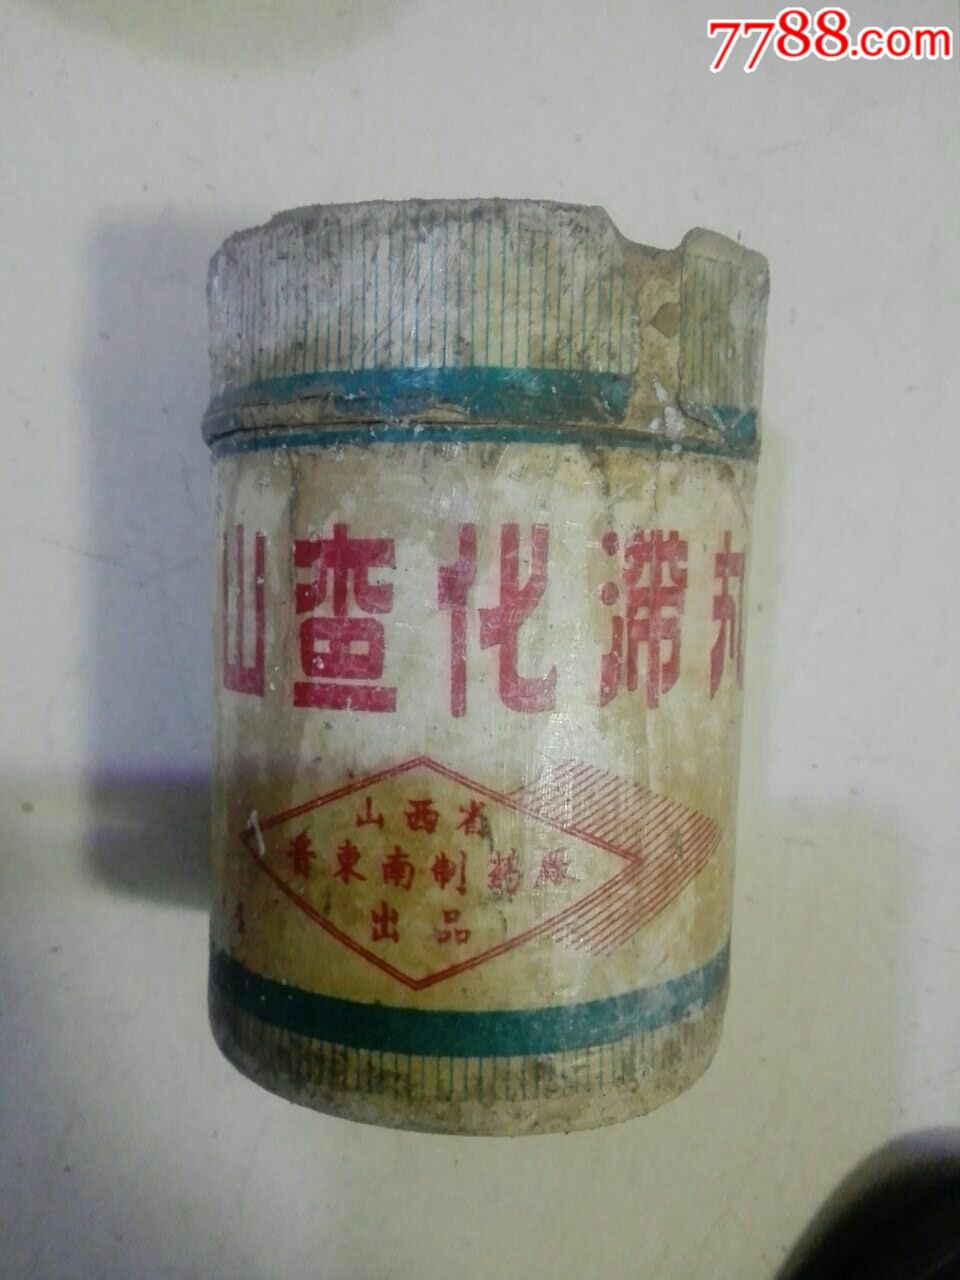 四个山楂丸药盒(七八十年代)